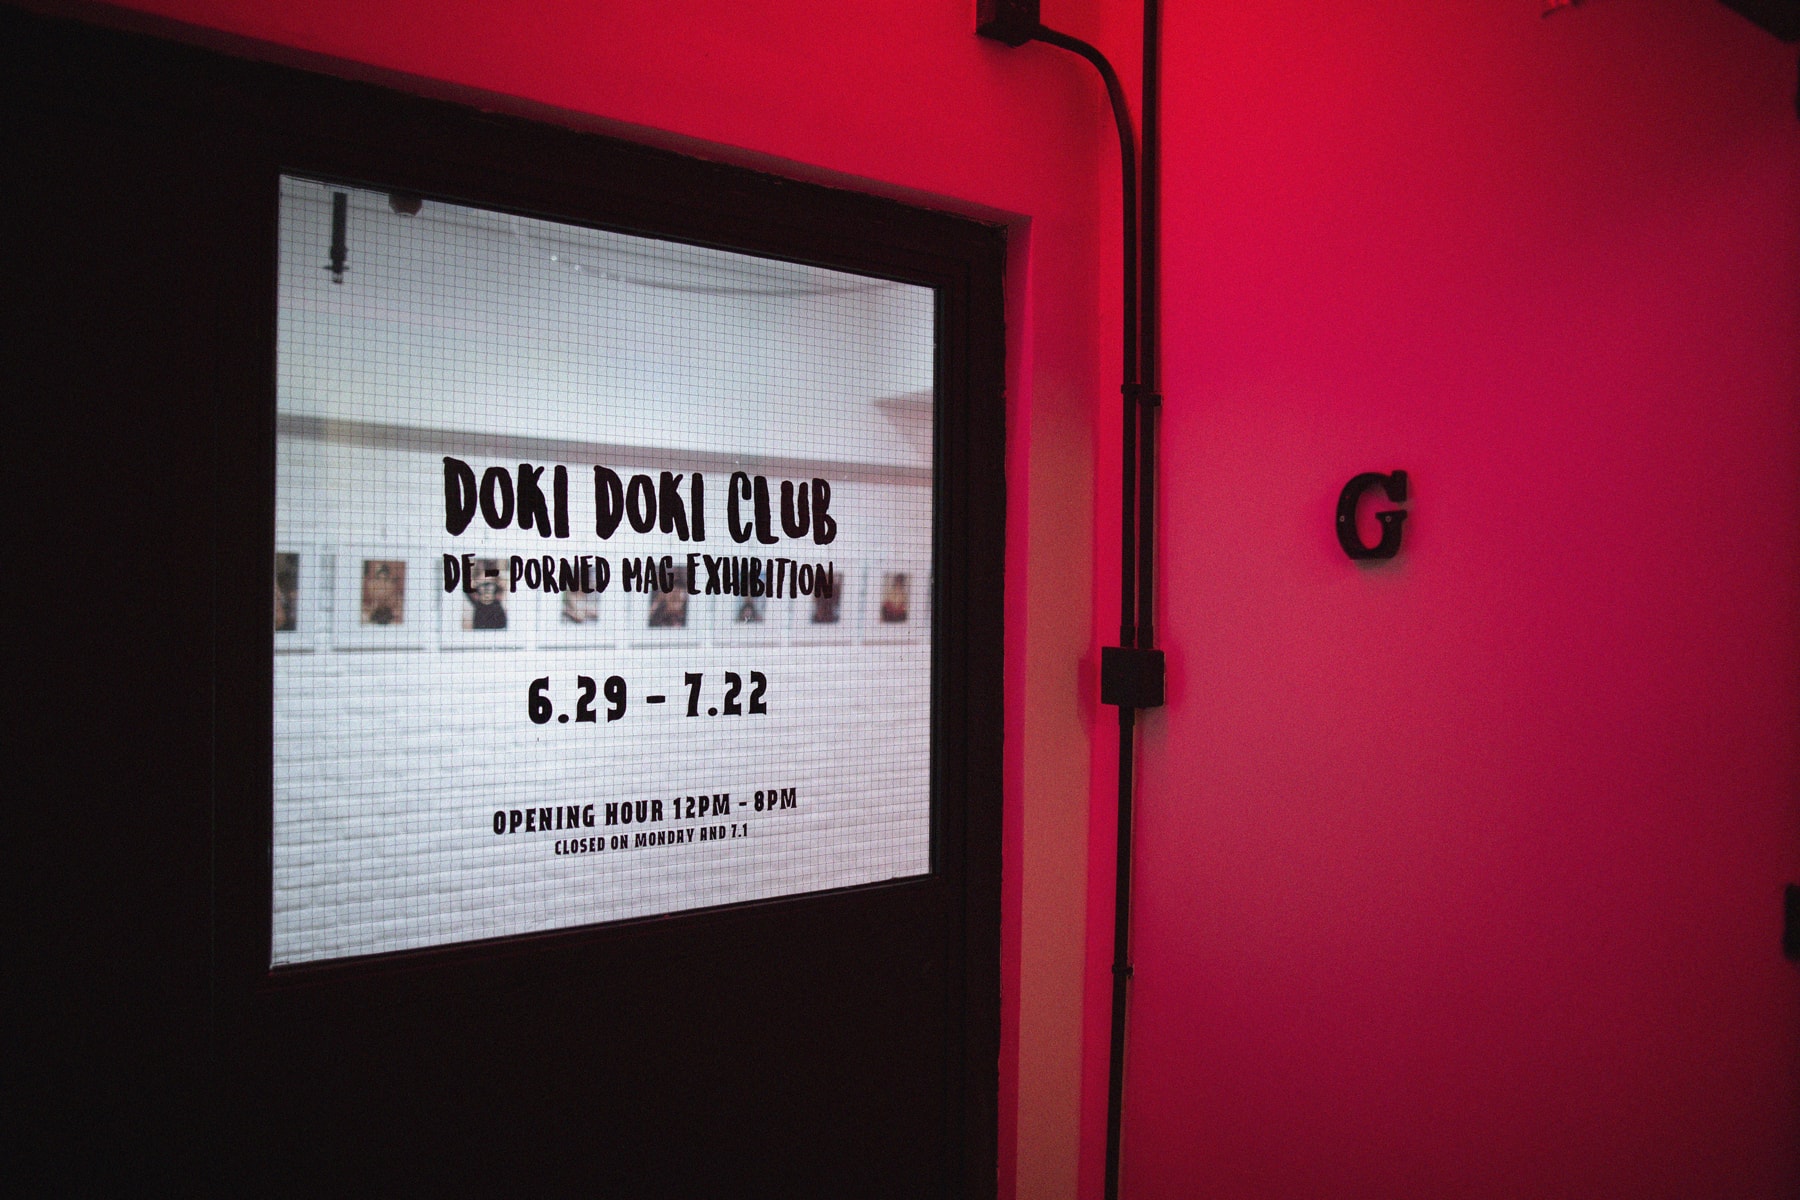 日本影片藝術家 DOKIDOKI CLUB 於香港舉辦個人「DE - PORNED MAG」